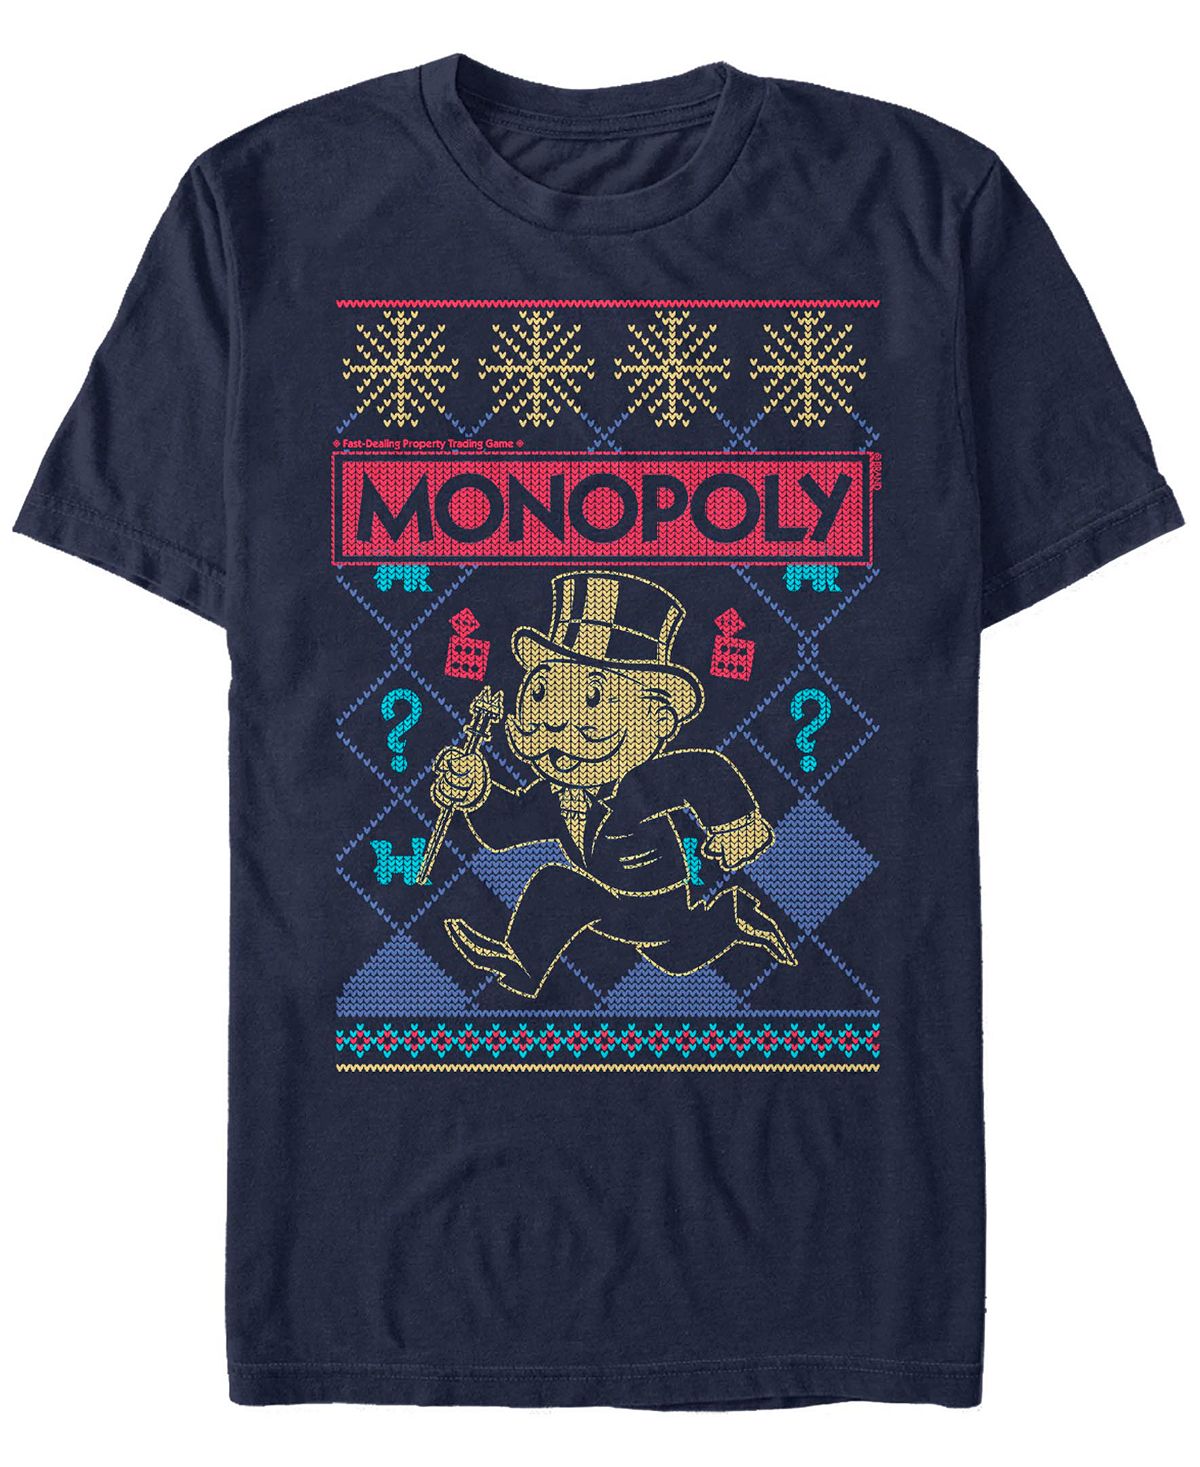 Мужская футболка с коротким рукавом в рождественском стиле monopoly Fifth Sun, синий мужская футболка с коротким рукавом в рождественском стиле monopoly fifth sun синий